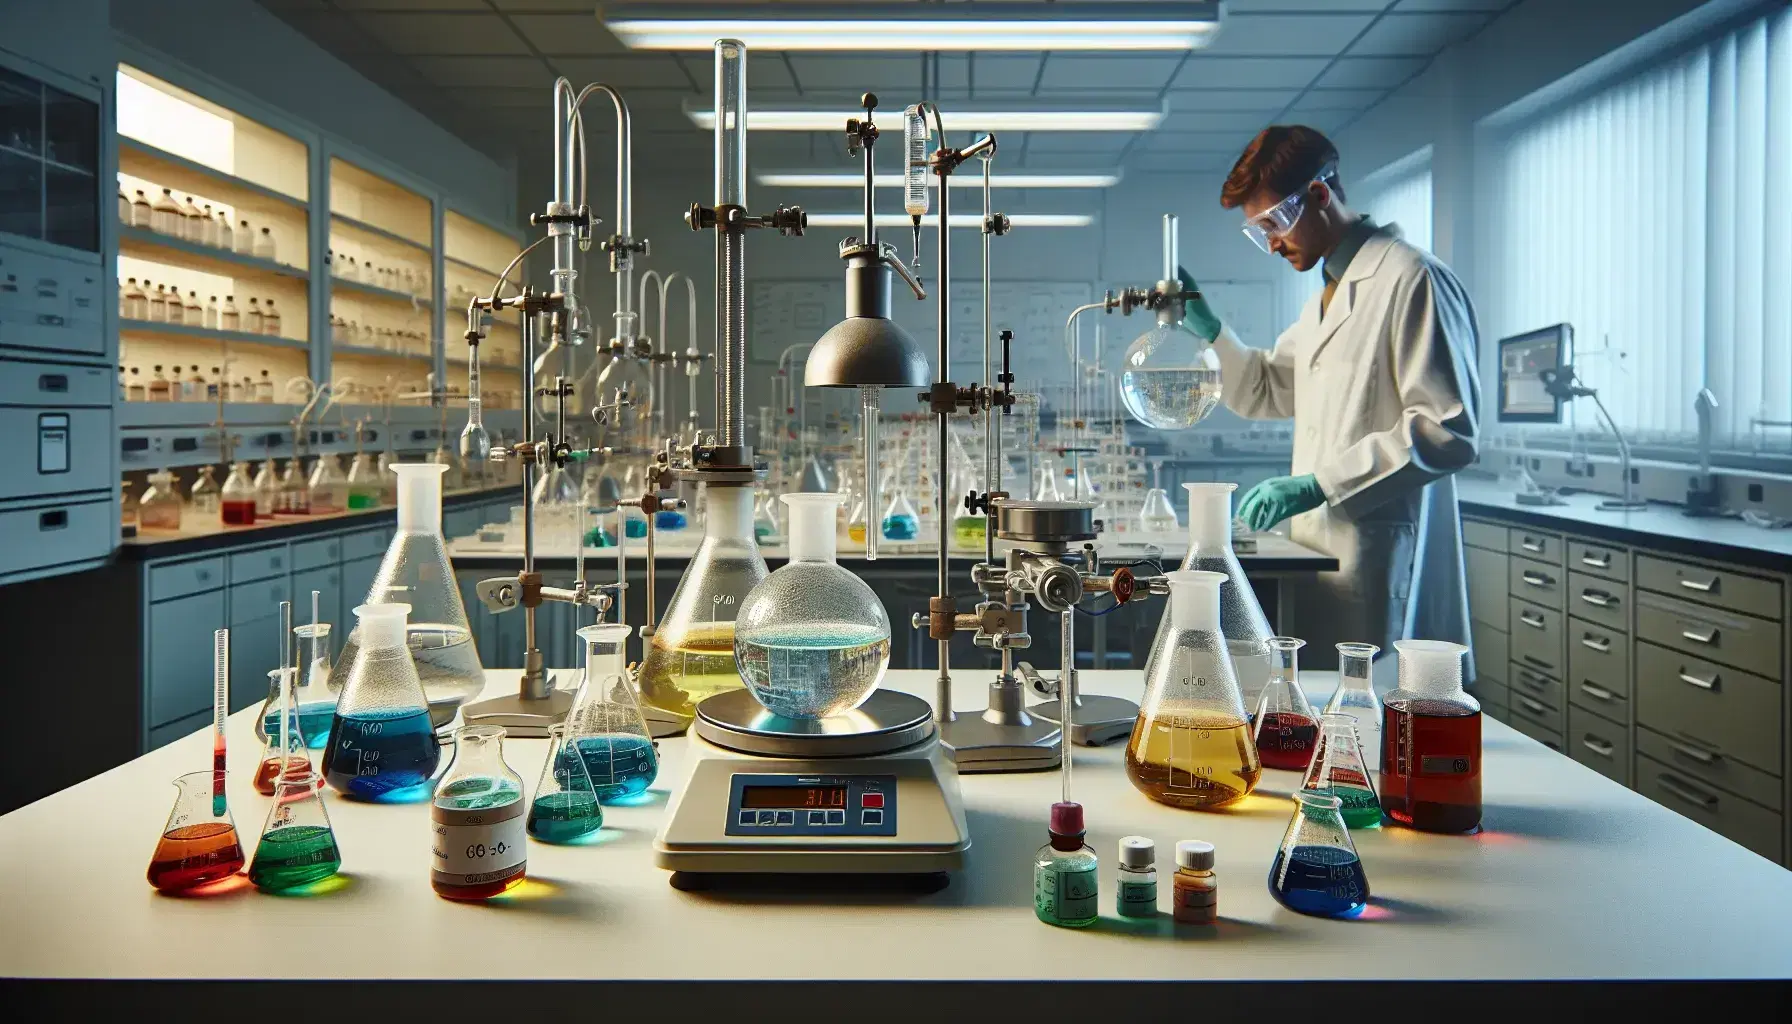 Laboratorio de química con mesas y erlenmeyers de líquidos coloridos, balanza analítica y técnico vertiendo líquido verde, ambiente limpio y ordenado.